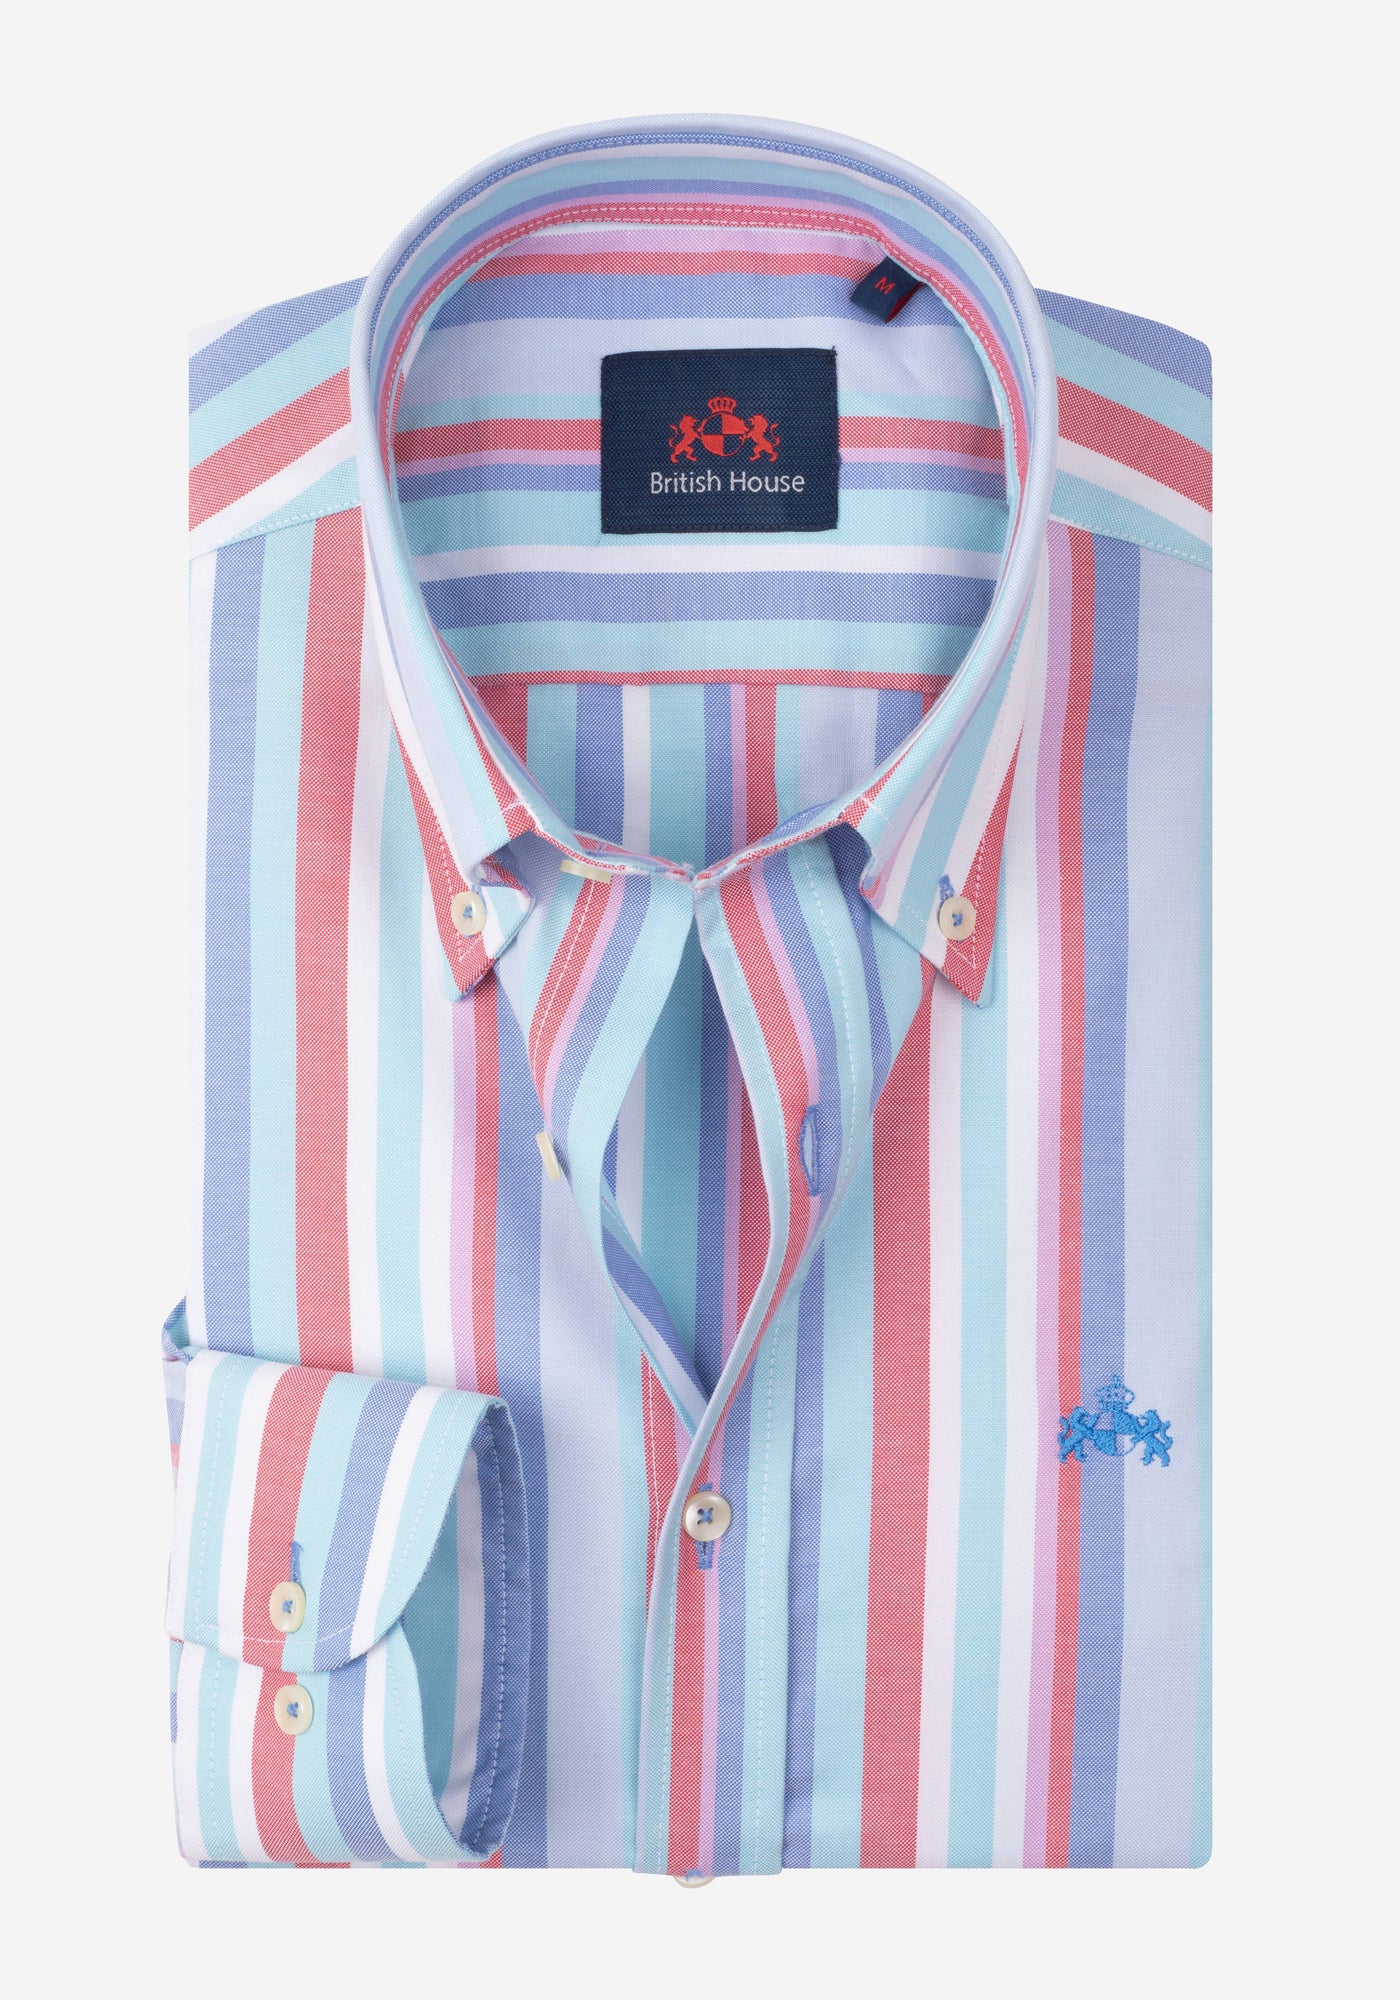 Electric Blue Stripe Oxford Shirt